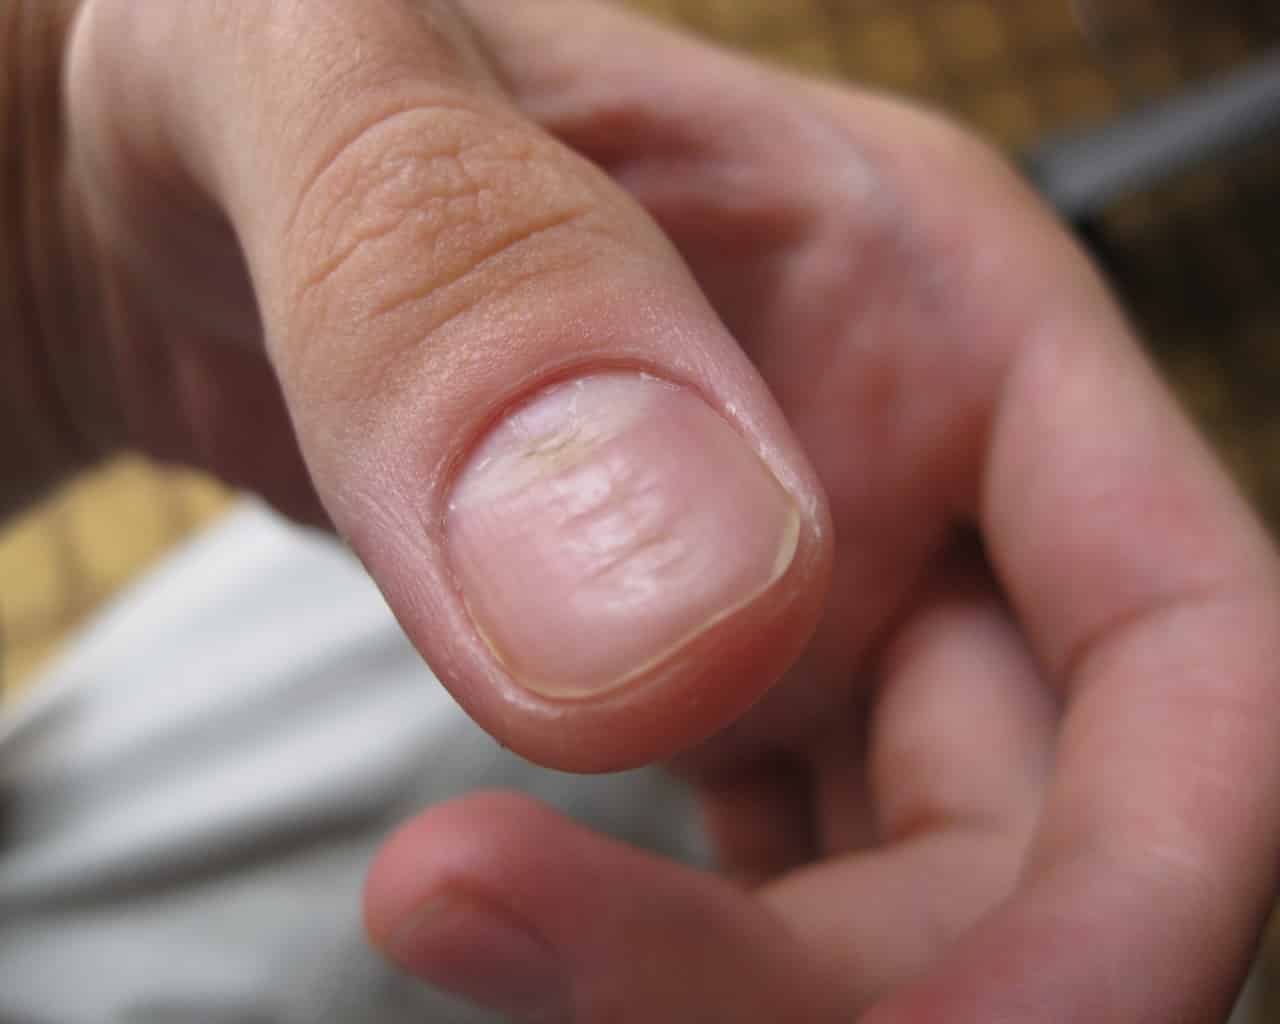 Неровные ногти: почему на них появляются точки, бугорки и бороздки